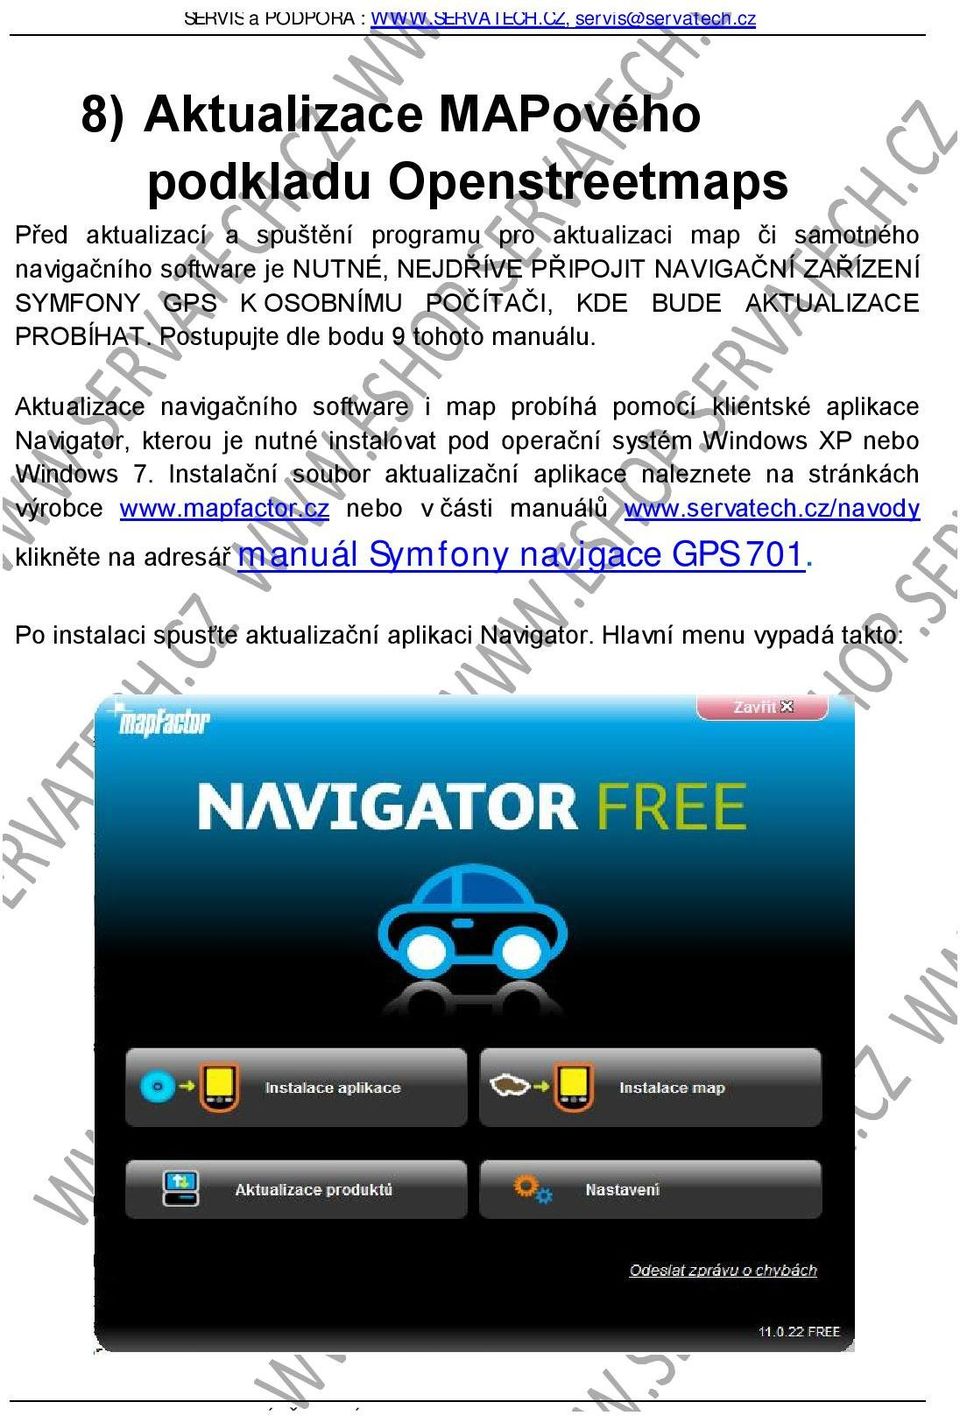 Aktualizace navigačního software i map probíhá pomocí klientské aplikace Navigator, kterou je nutné instalovat pod operační systém Windows XP nebo Windows 7.